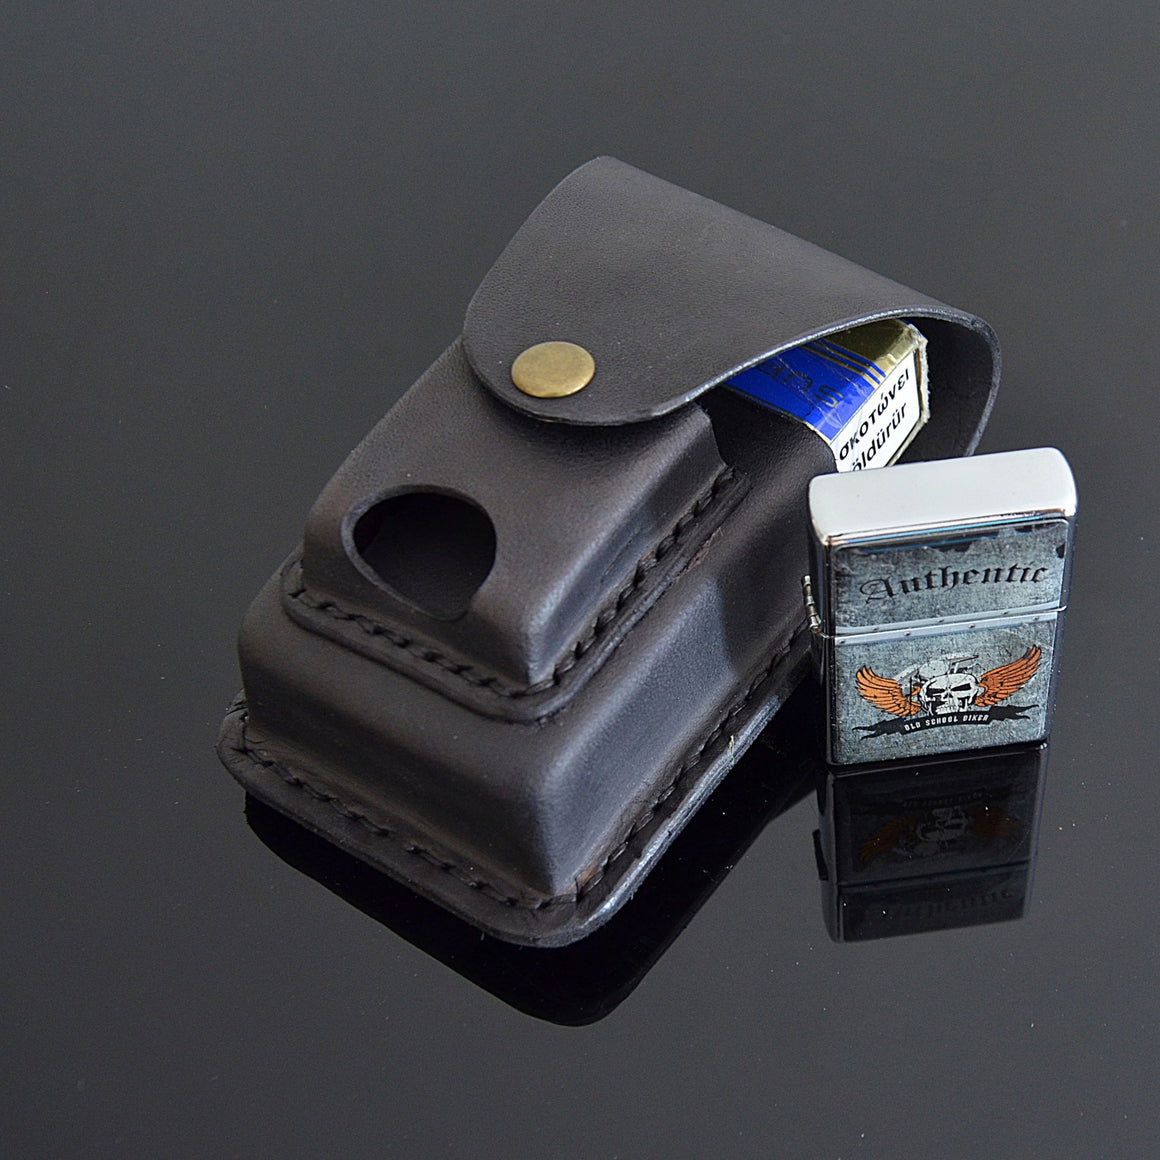 leather cigarette lighter case